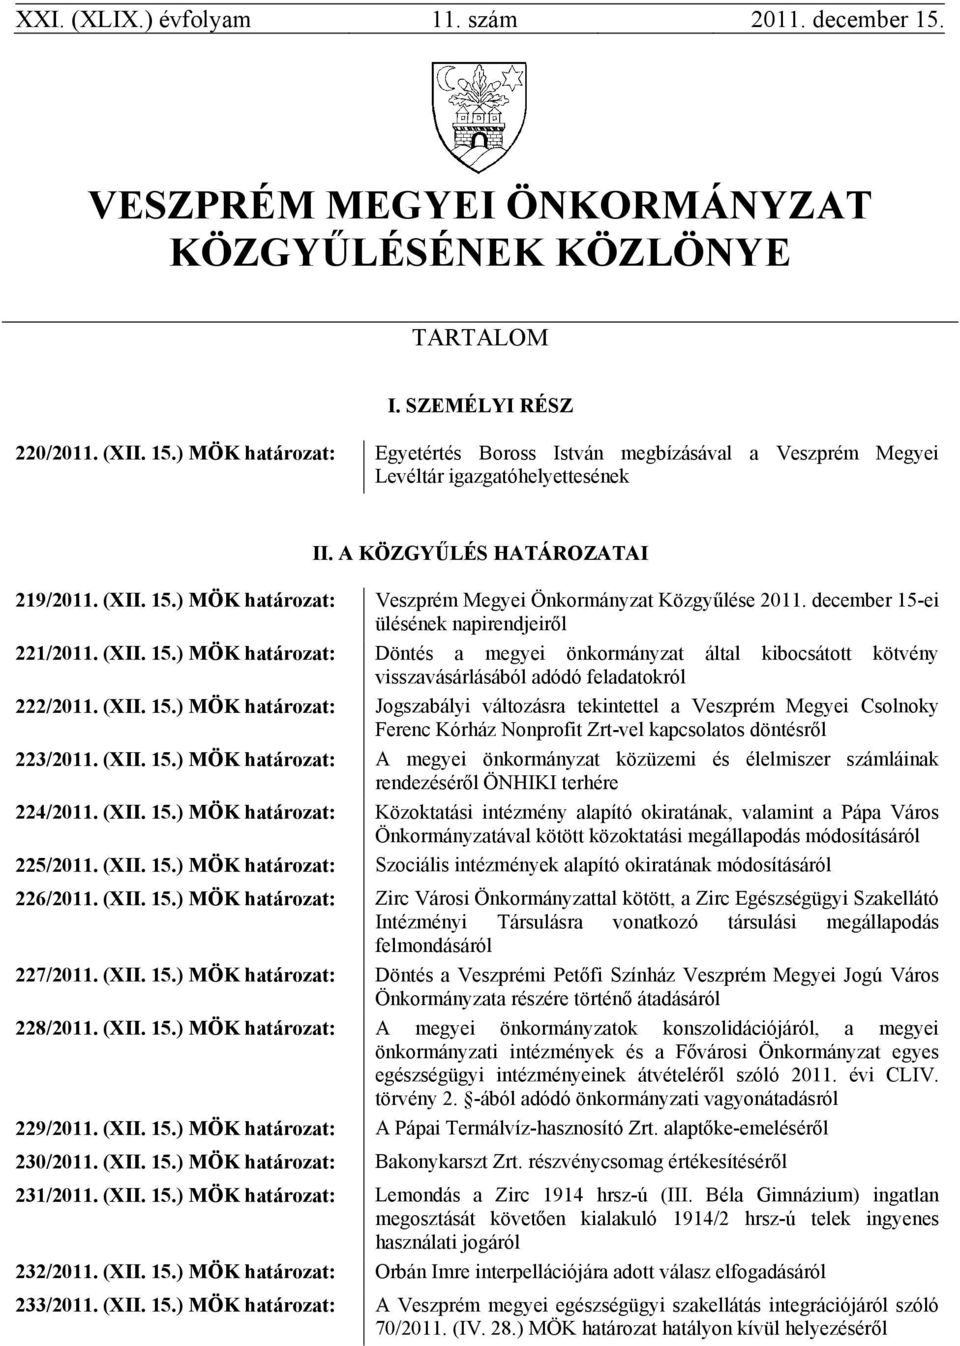 (XII. 15.) MÖK határozat: Jogszabályi változásra tekintettel a Veszprém Megyei Csolnoky Ferenc Kórház Nonprofit Zrt-vel kapcsolatos döntésről 223/2011. (XII. 15.) MÖK határozat: A megyei önkormányzat közüzemi és élelmiszer számláinak rendezéséről ÖNHIKI terhére 224/2011.